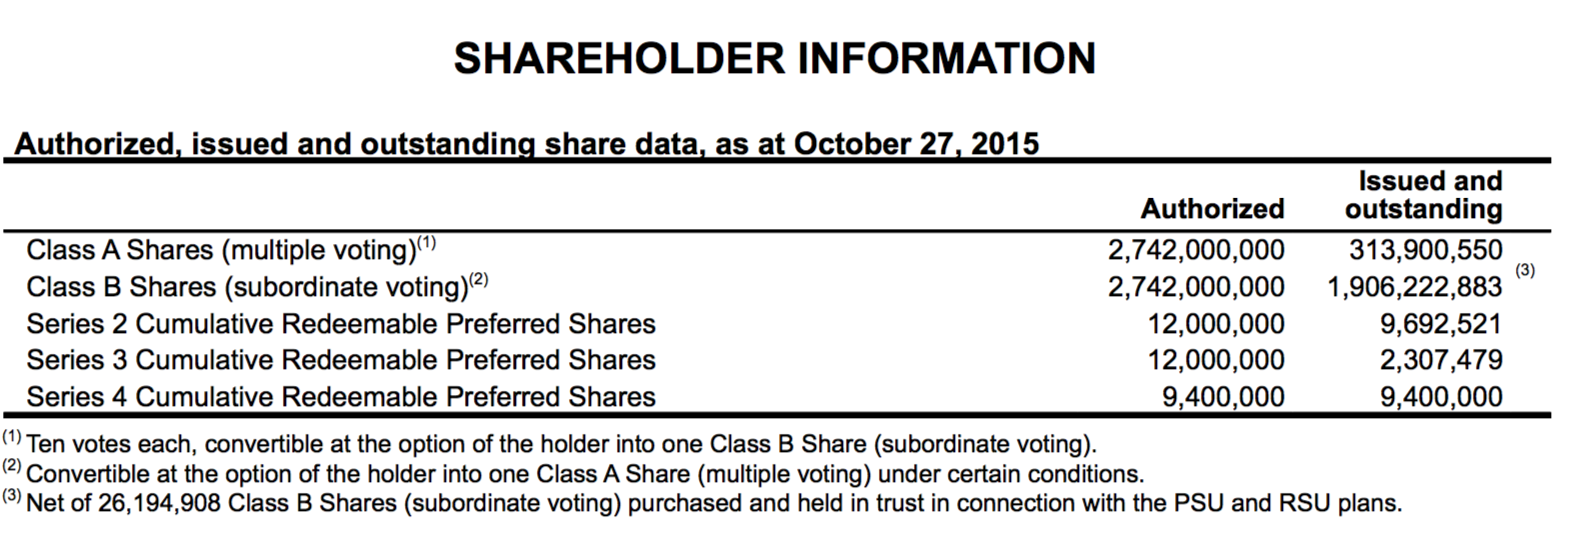 Shareholder information